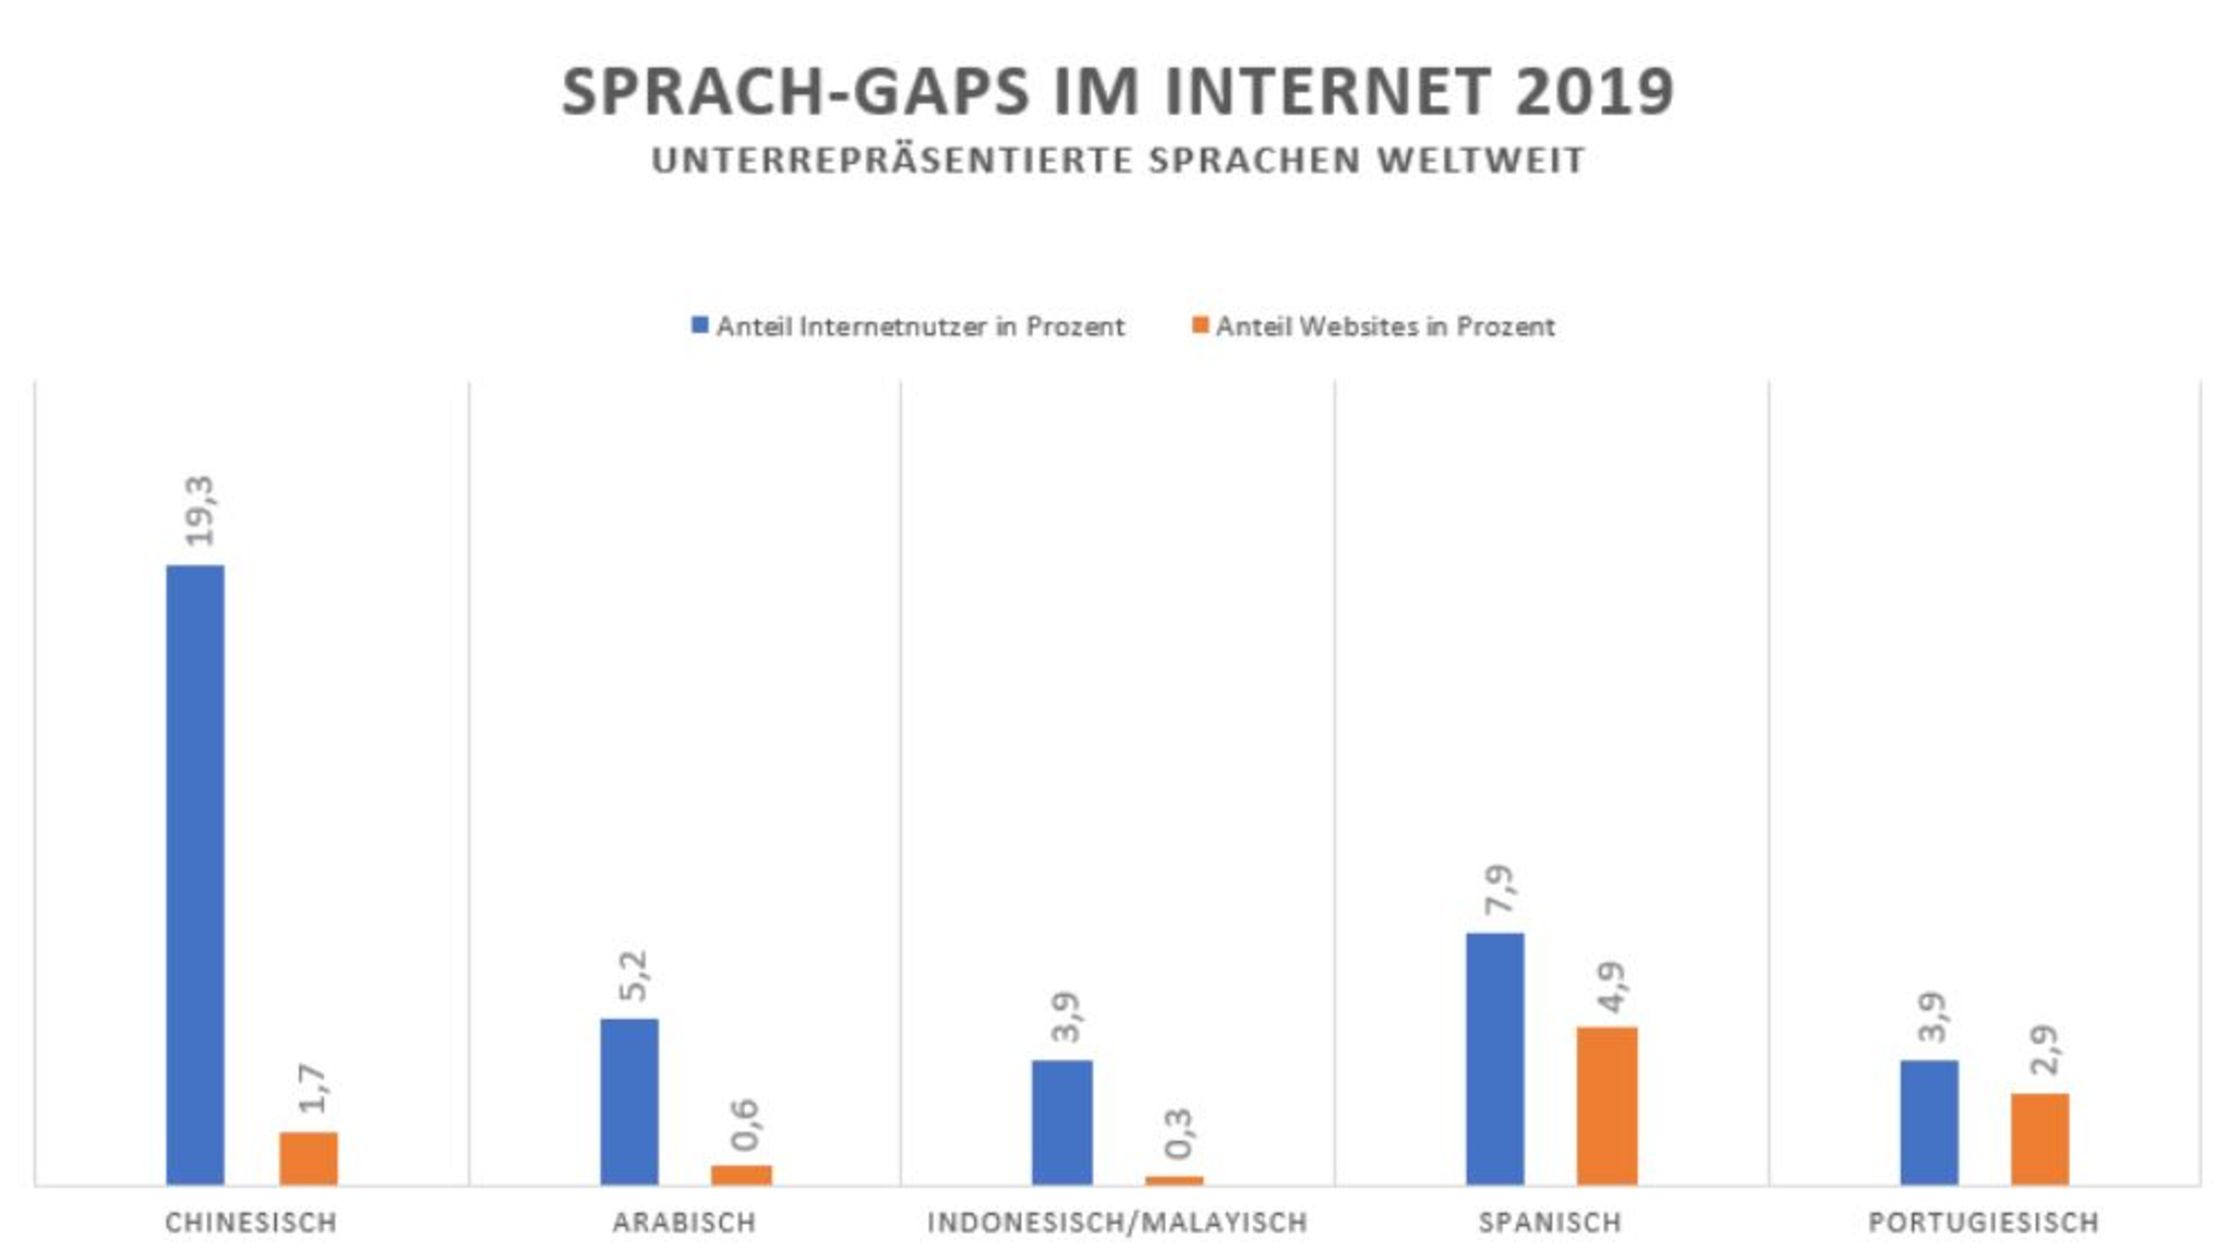 Sprach-Gaps im Internet 2019